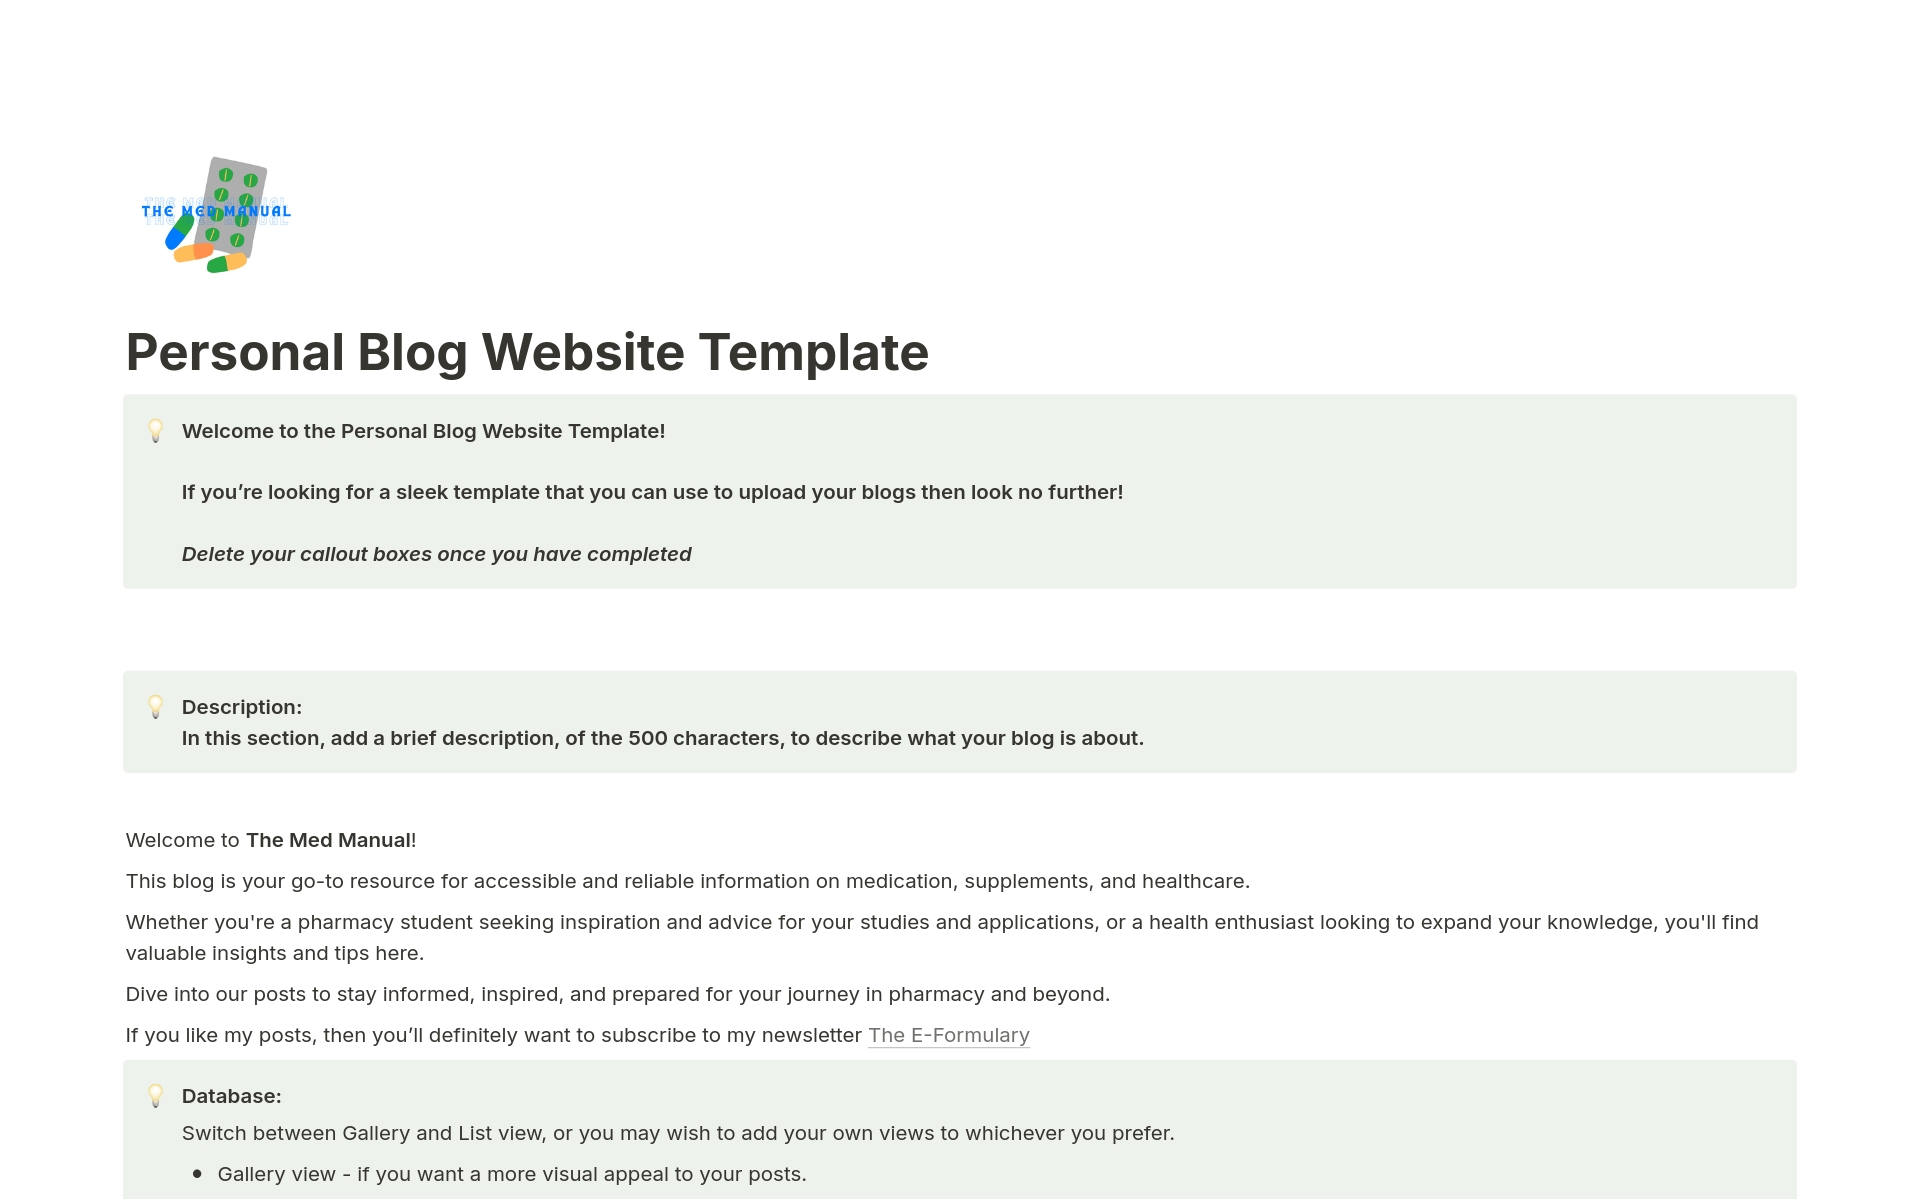 Aperçu du modèle de Personal Blog Website